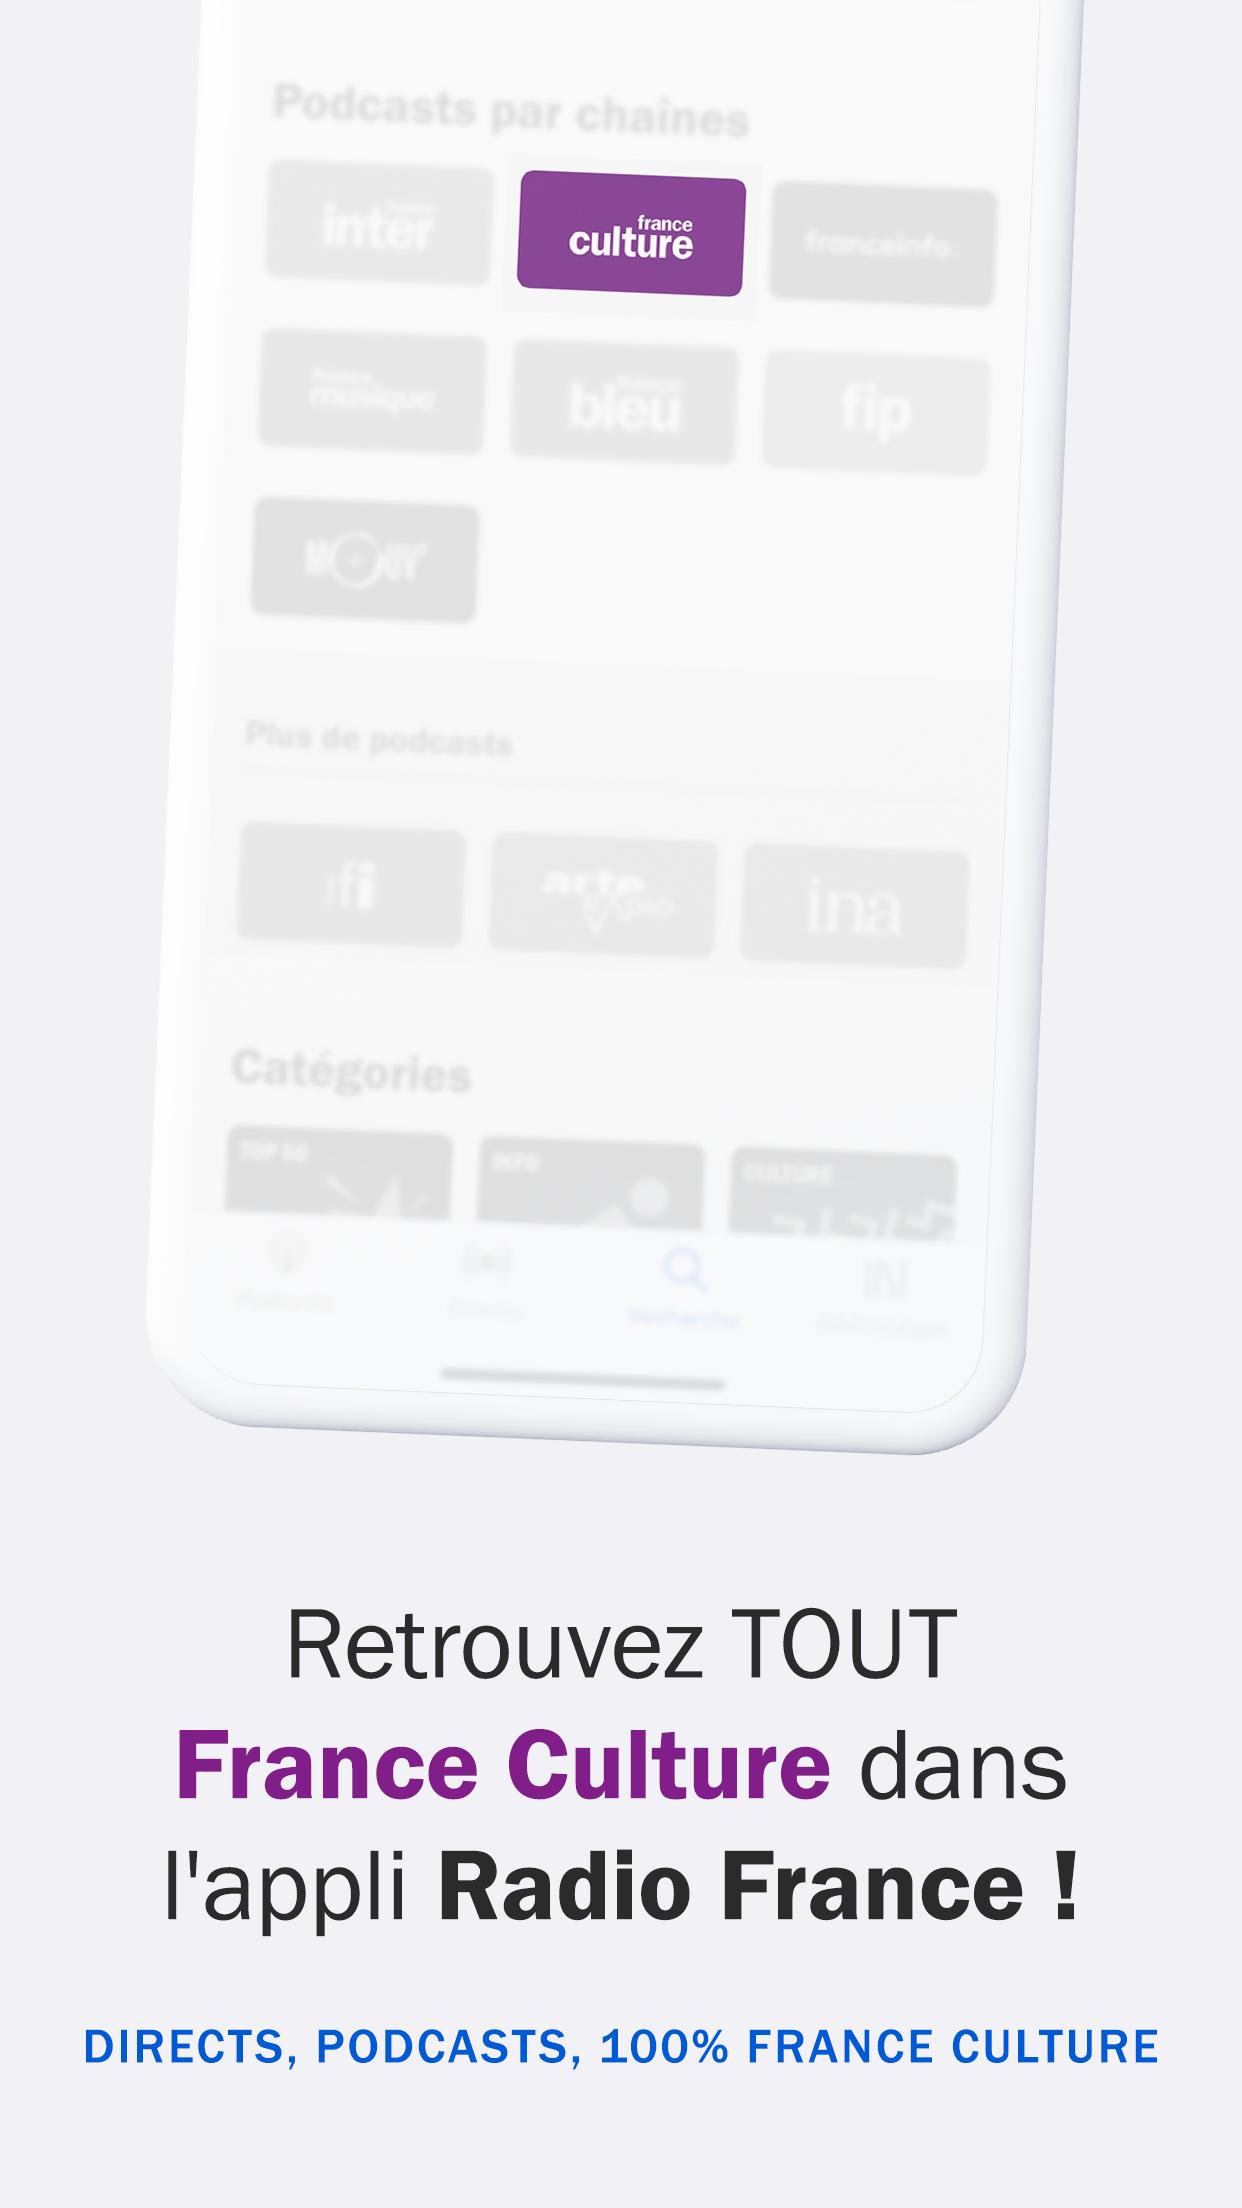 France Culture APK pour Android Télécharger